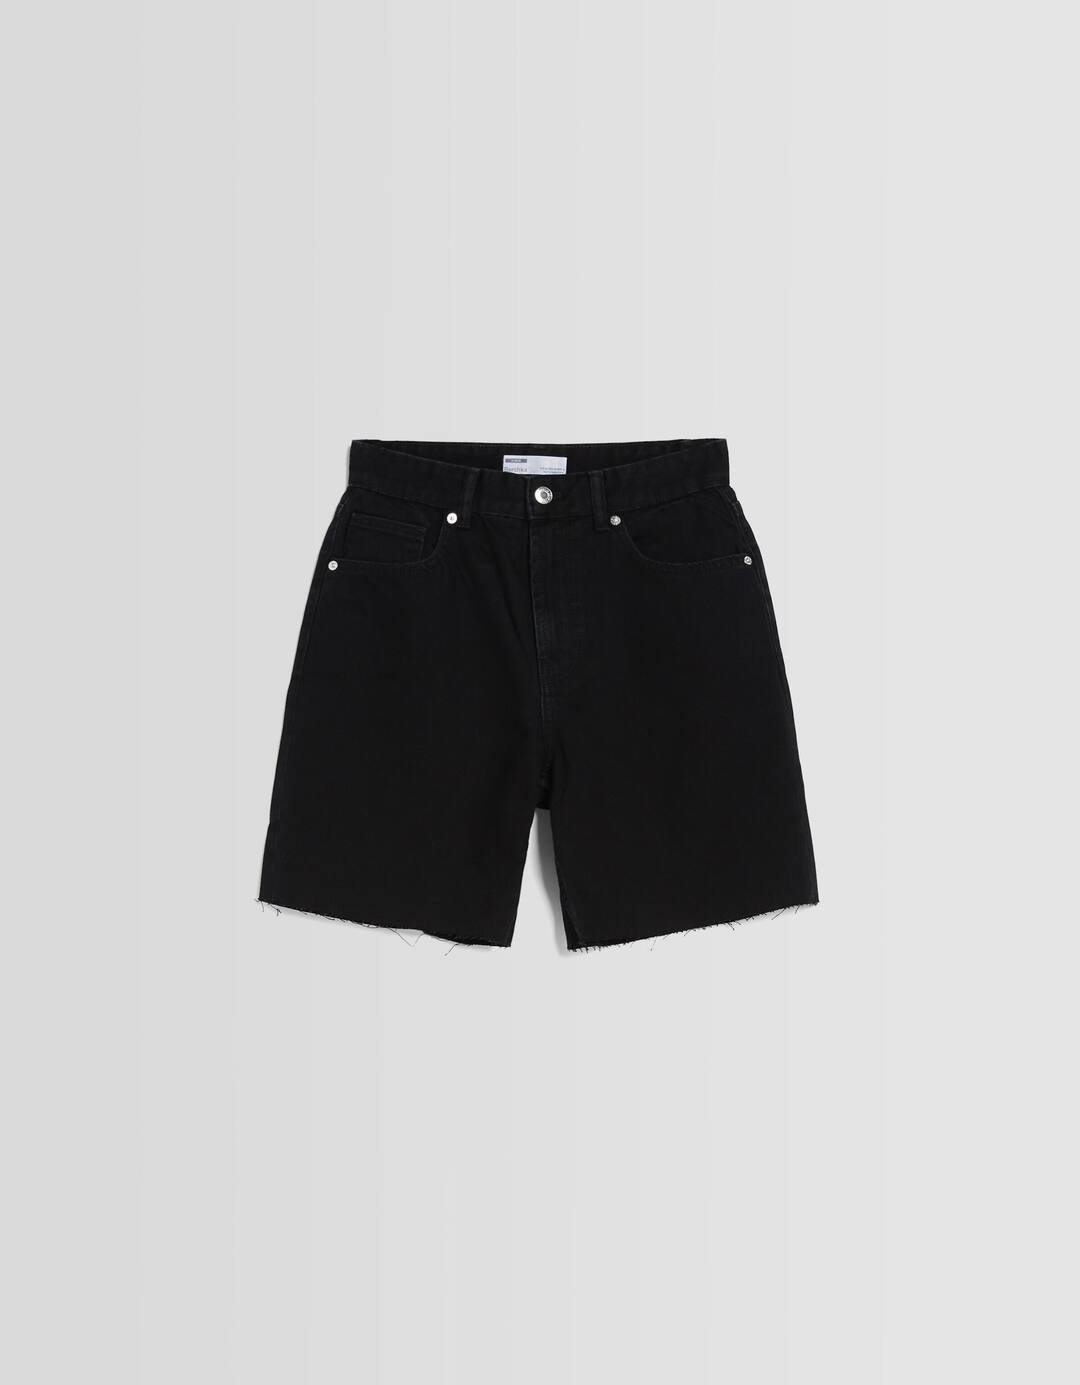 Vintage denim Bermuda shorts